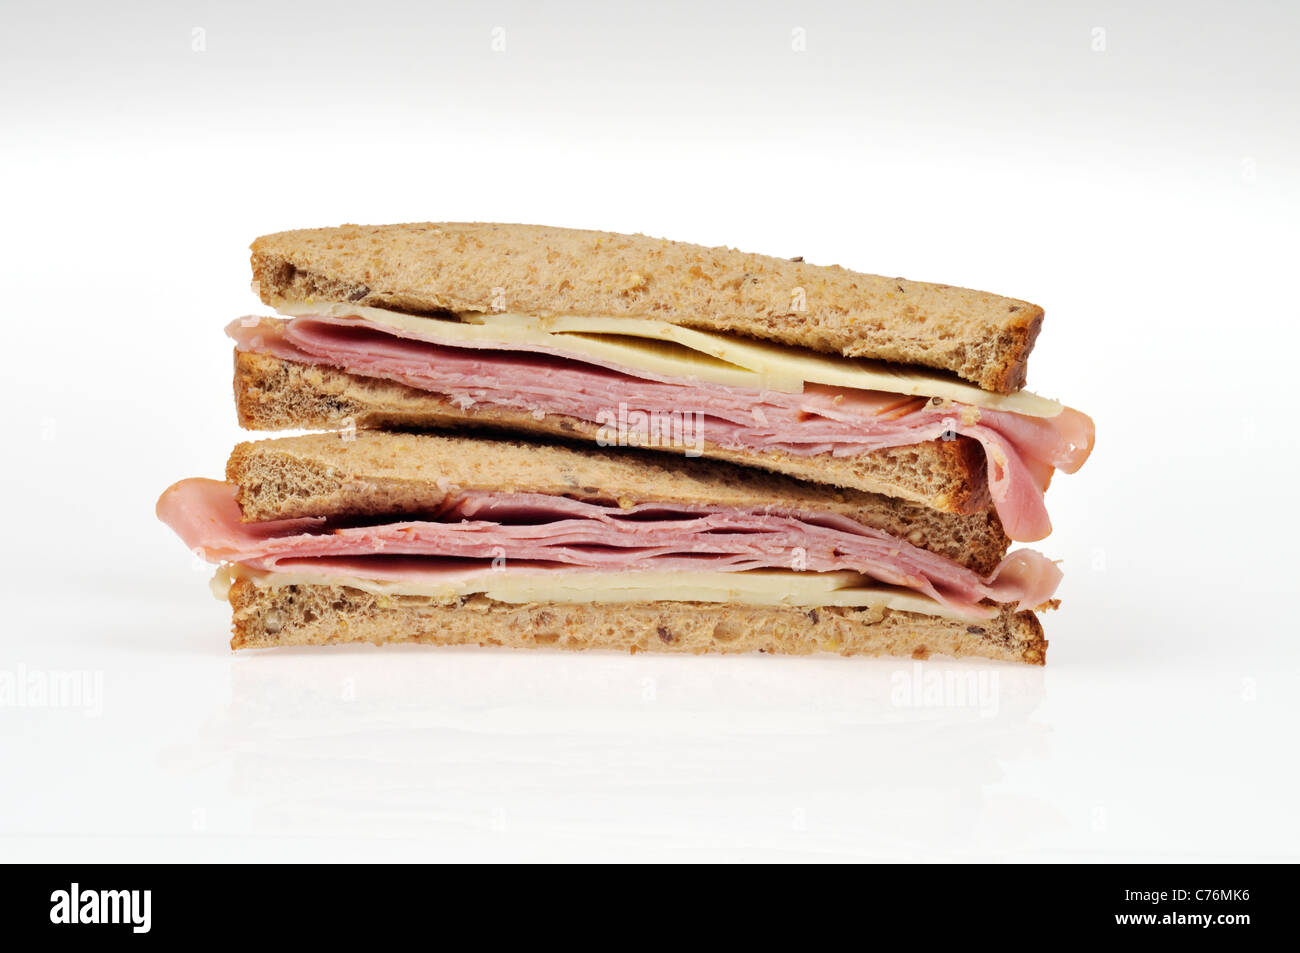 Hälften der Schinken und Käse Sandwich auf ganze Mahlzeit Brot mit Salat gestapelt auf weißem Hintergrund, isoliert. Stockfoto